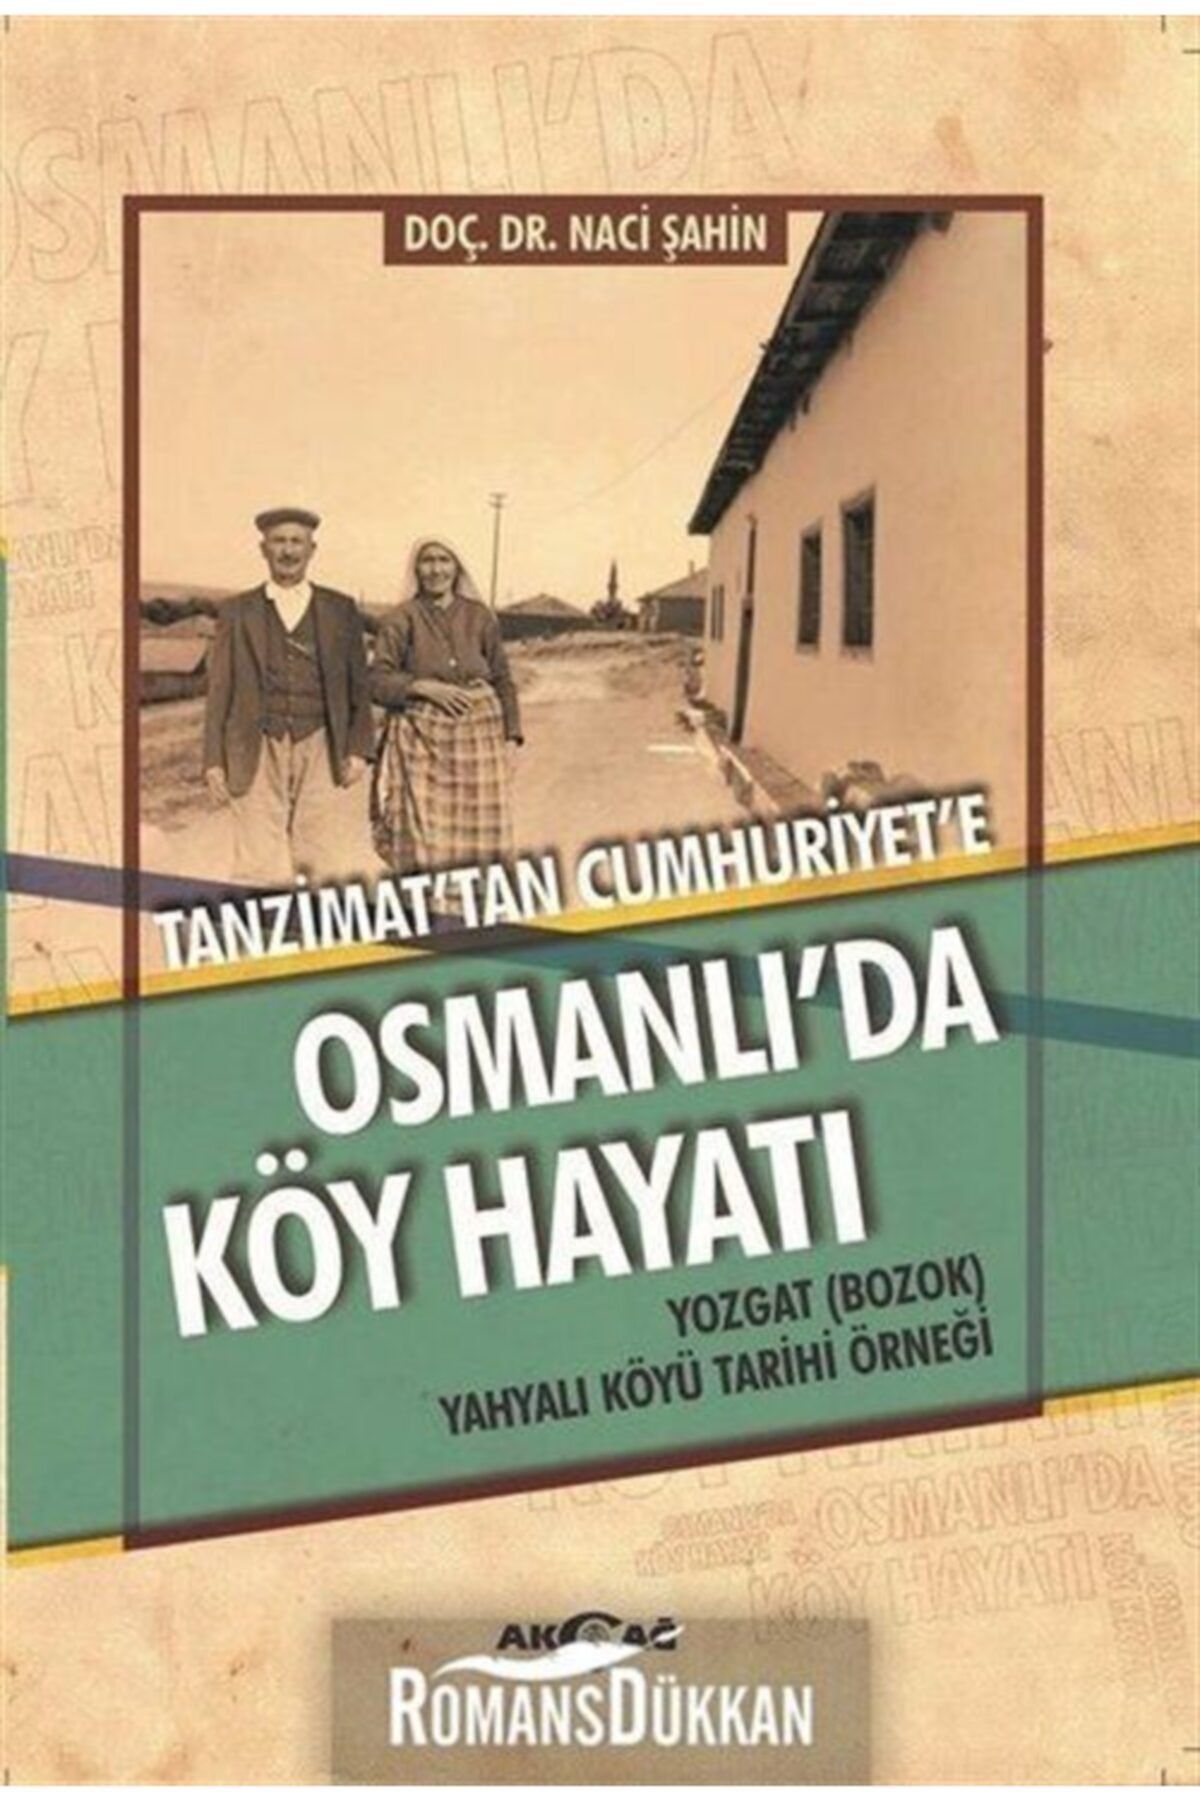 Akçağ Yayınları Tanzimat'tan Cumhuriyet'e Osmanlı'da Köy Hayatı